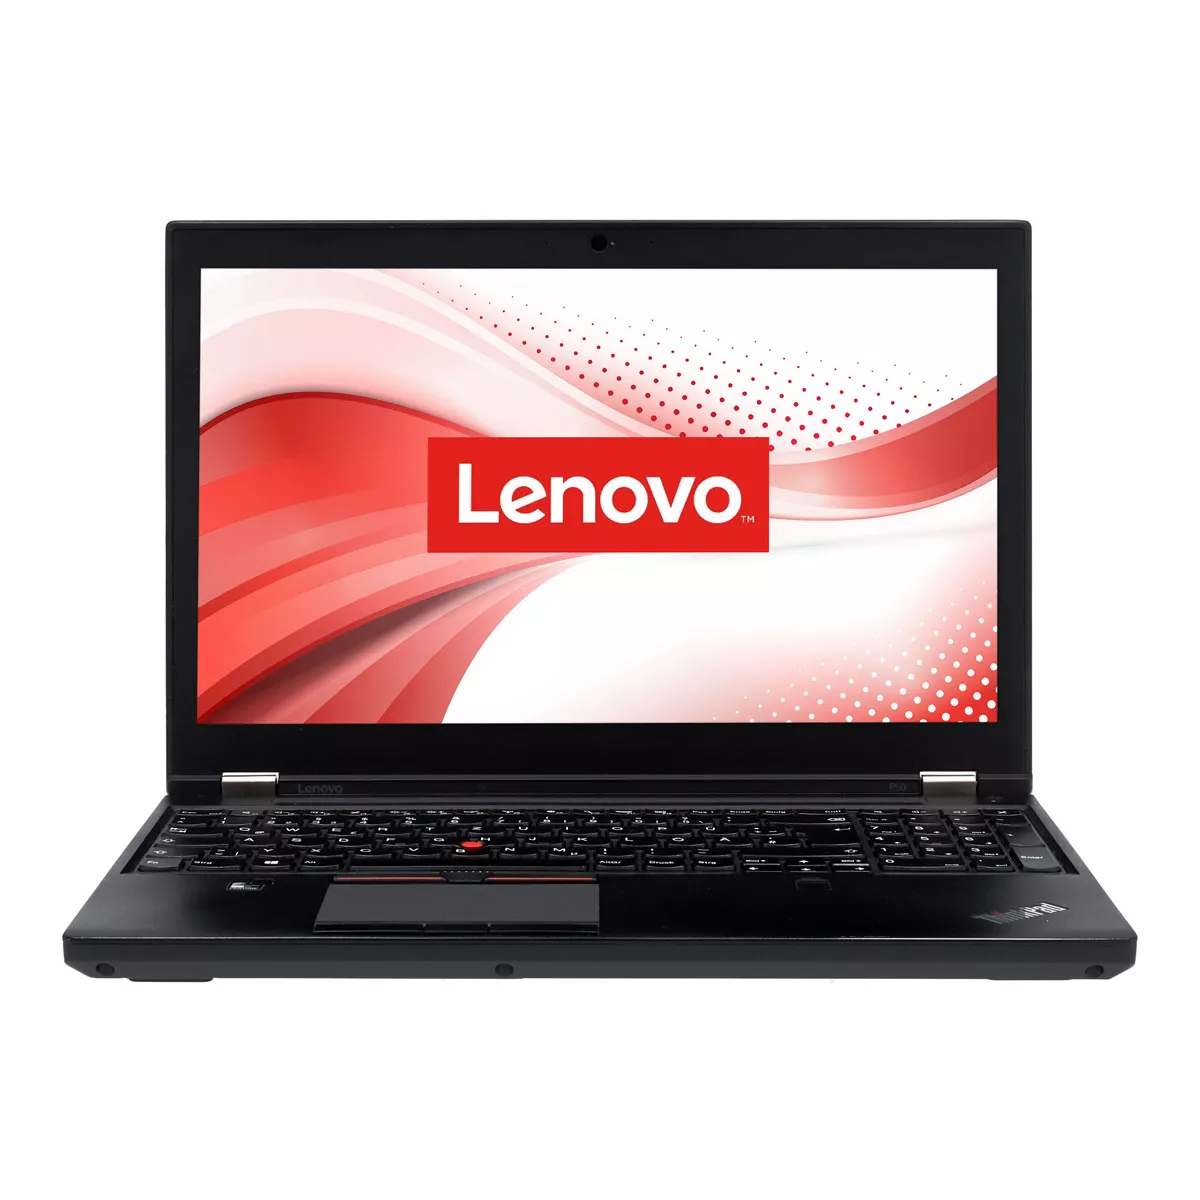 Lenovo ThinkPad P51 Core i7 7820HQ nVidia Quadro M2200M 4,0 GB 512 GB M.2 SSD Webcam A